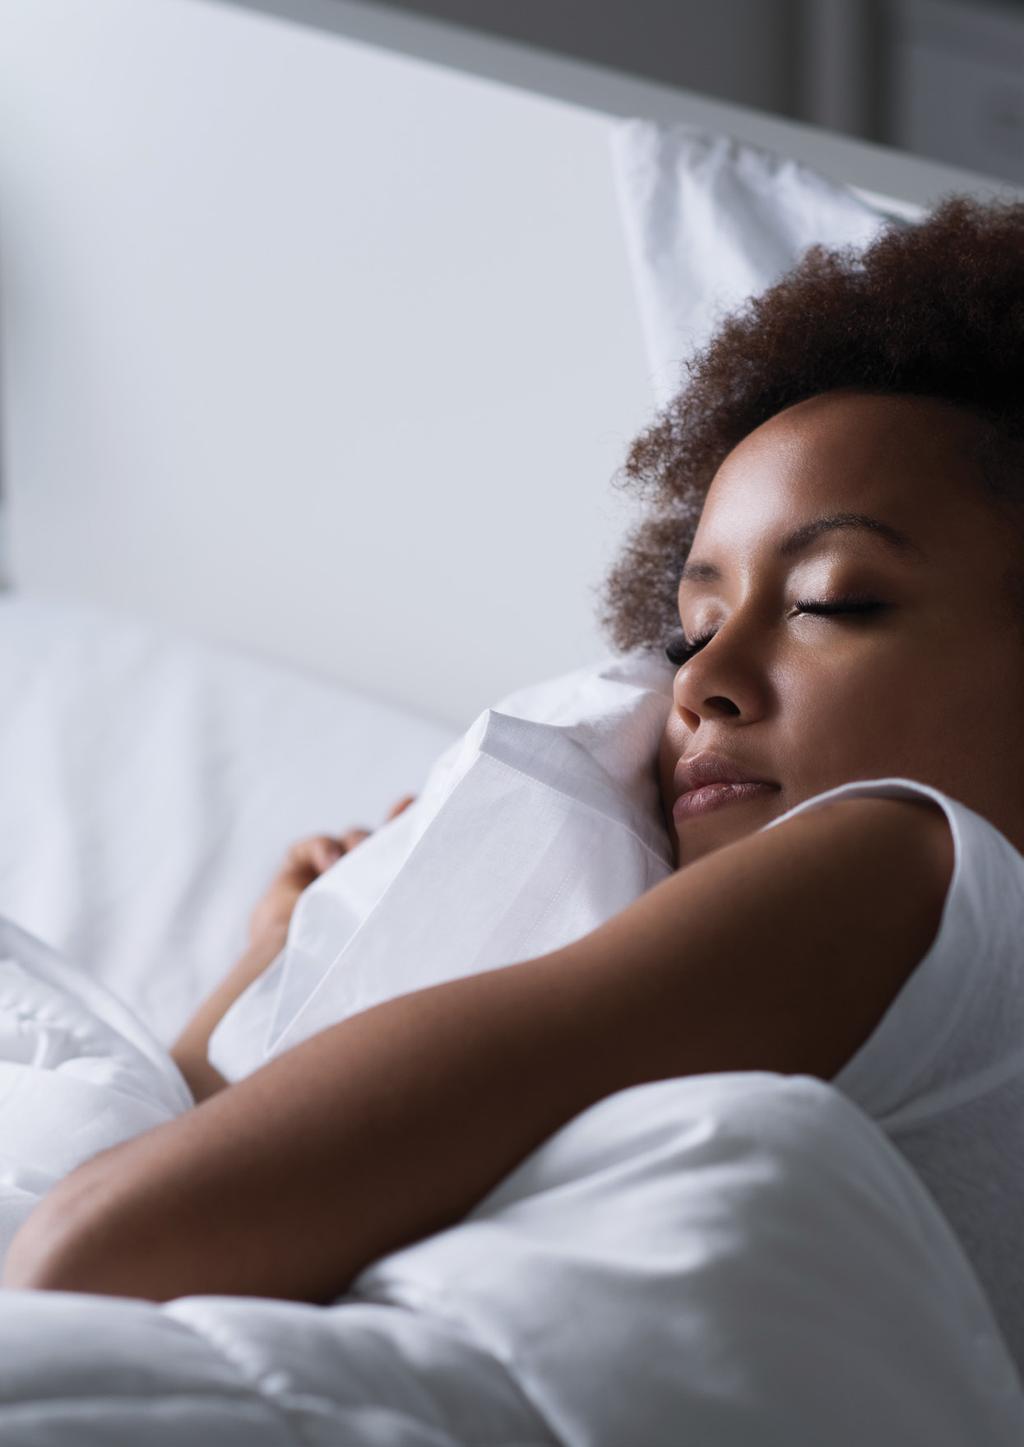 מנוחה וניהול לחצים שינה משפרת את מצב הרוח ומעניקה לגופכם הזדמנות להתאושש ולהתחדש. השתמשו בשמנים אתריים כדי להפיק את המירב משעות השינה שלכם.